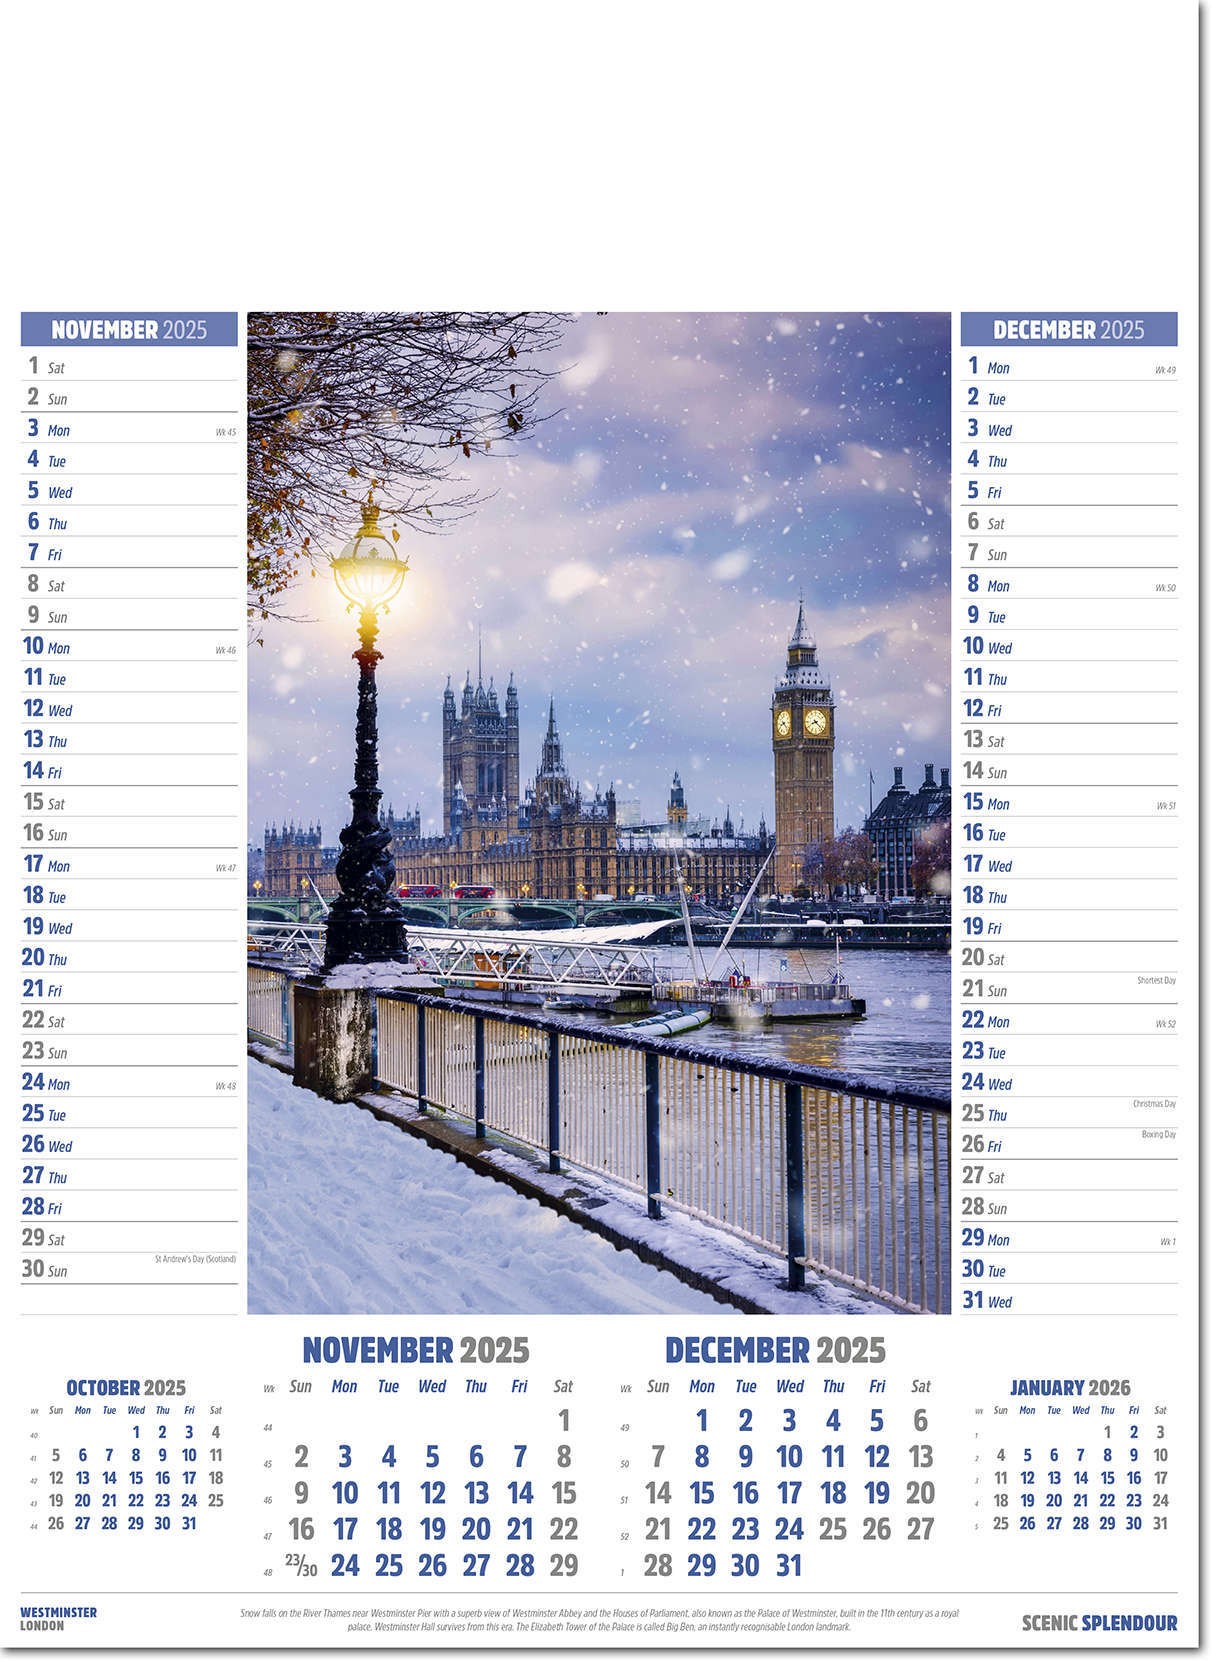 Scenic Splendour Calendar